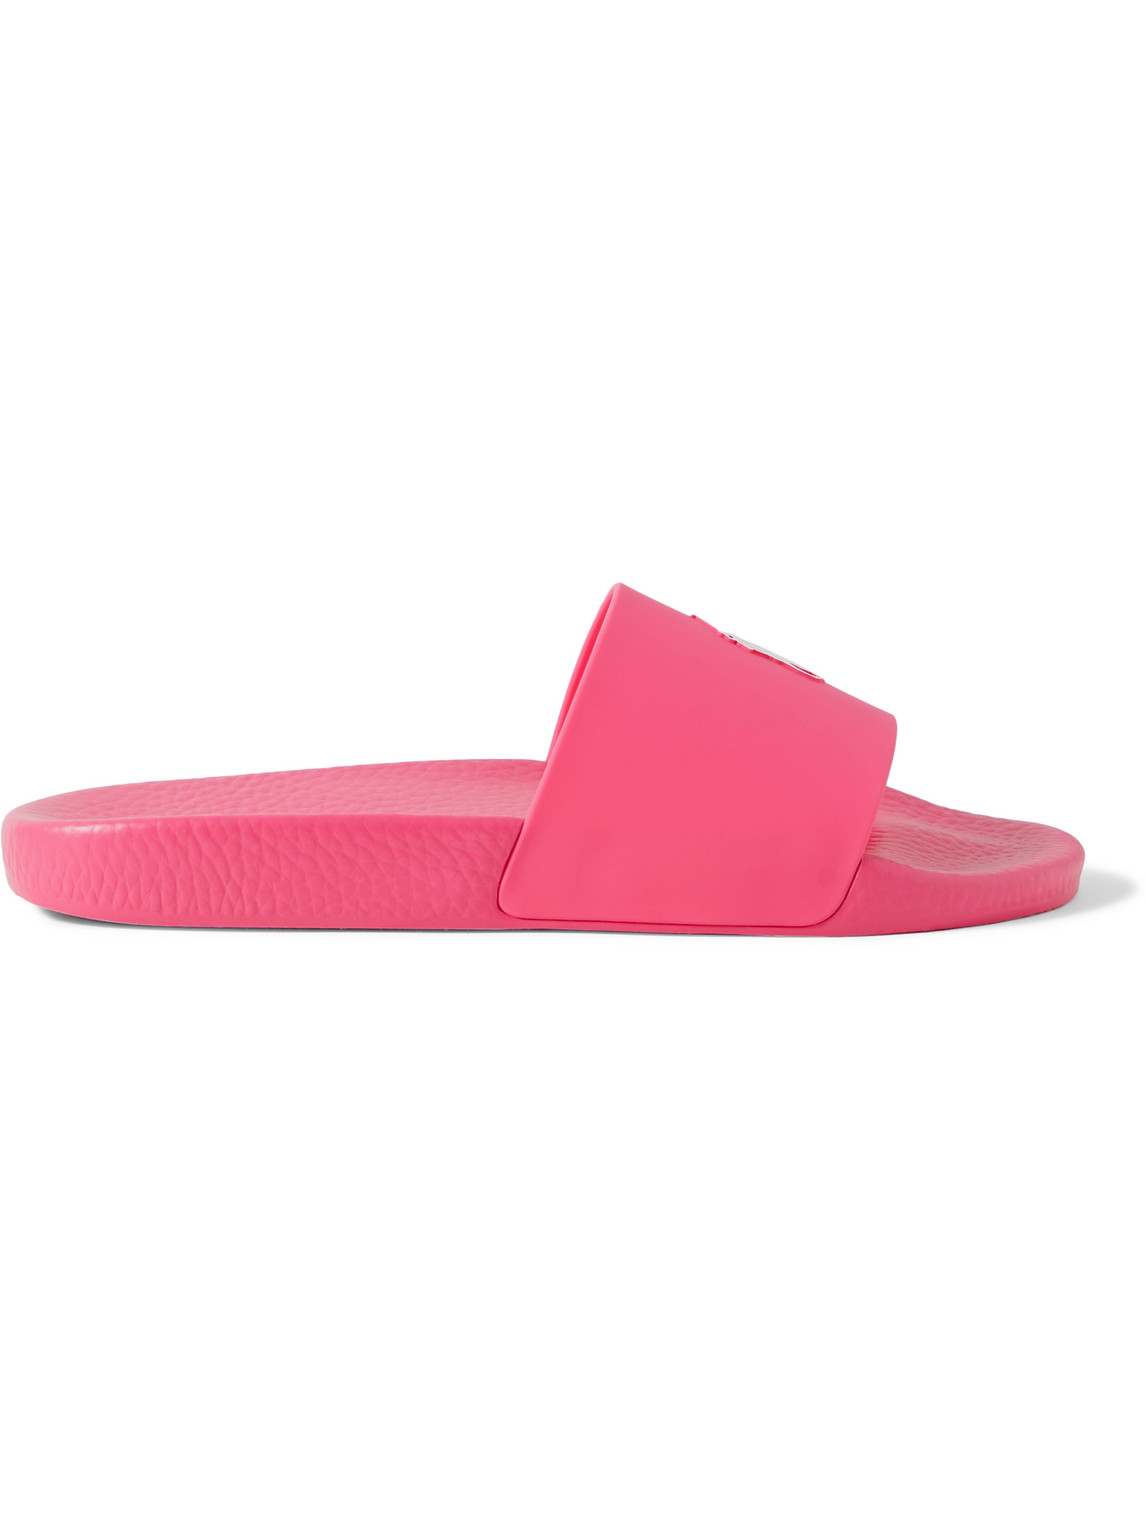 Polo Ralph Lauren - Logo-Embossed Rubber Slides - Men - Pink - UK 10 for Men